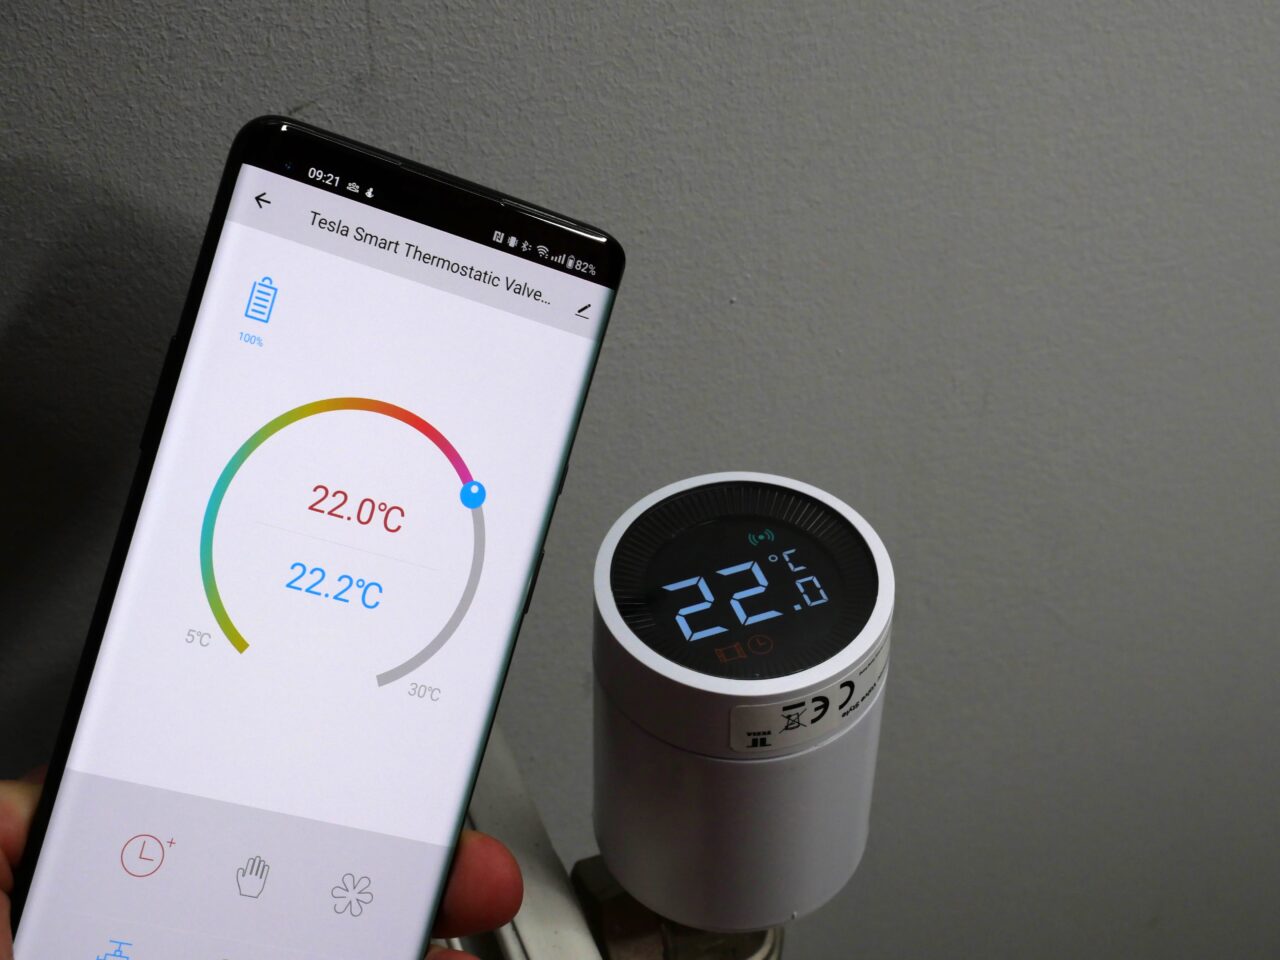 Smartfon wyświetlający aplikację do zarządzania temperaturą z czytelnym termometrem pokazującym 22,0°C, obok inteligentnego termostatu naściennego również pokazującego 22°C.